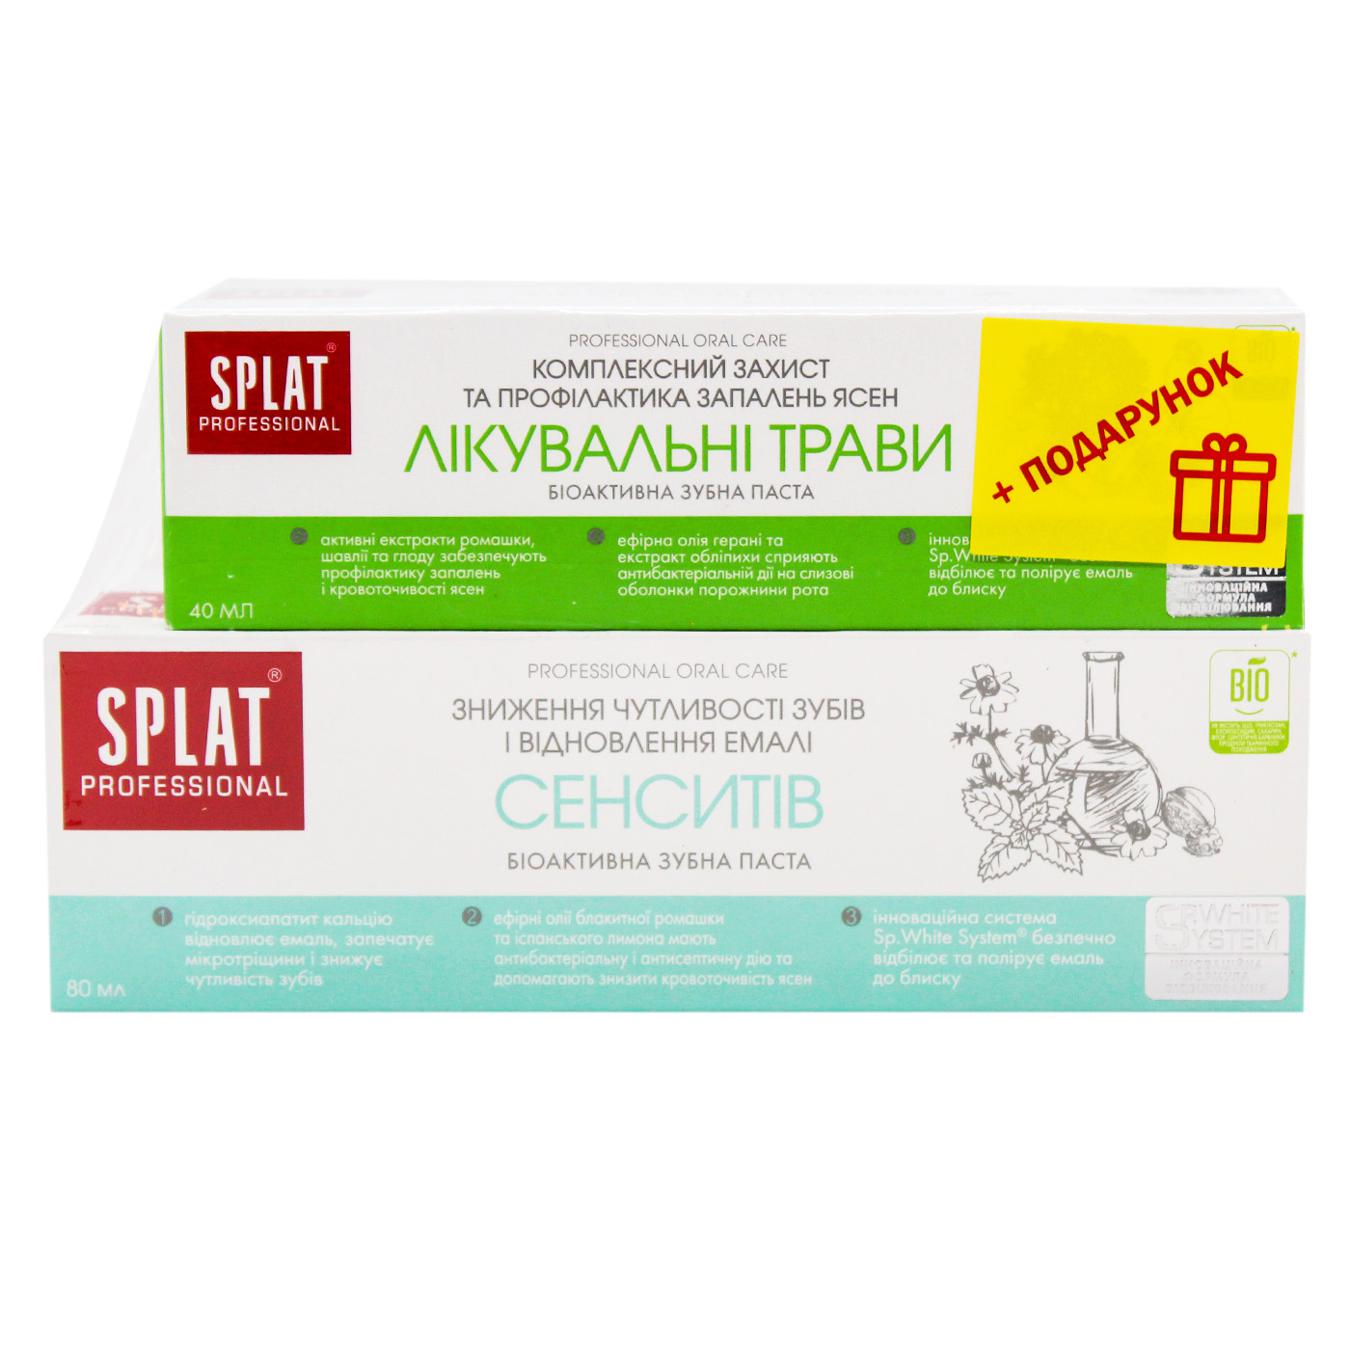 Зубна паста промонабір sensitive SPLAT 80м  + зубна паста лікувальні трави SPLAT 40мл